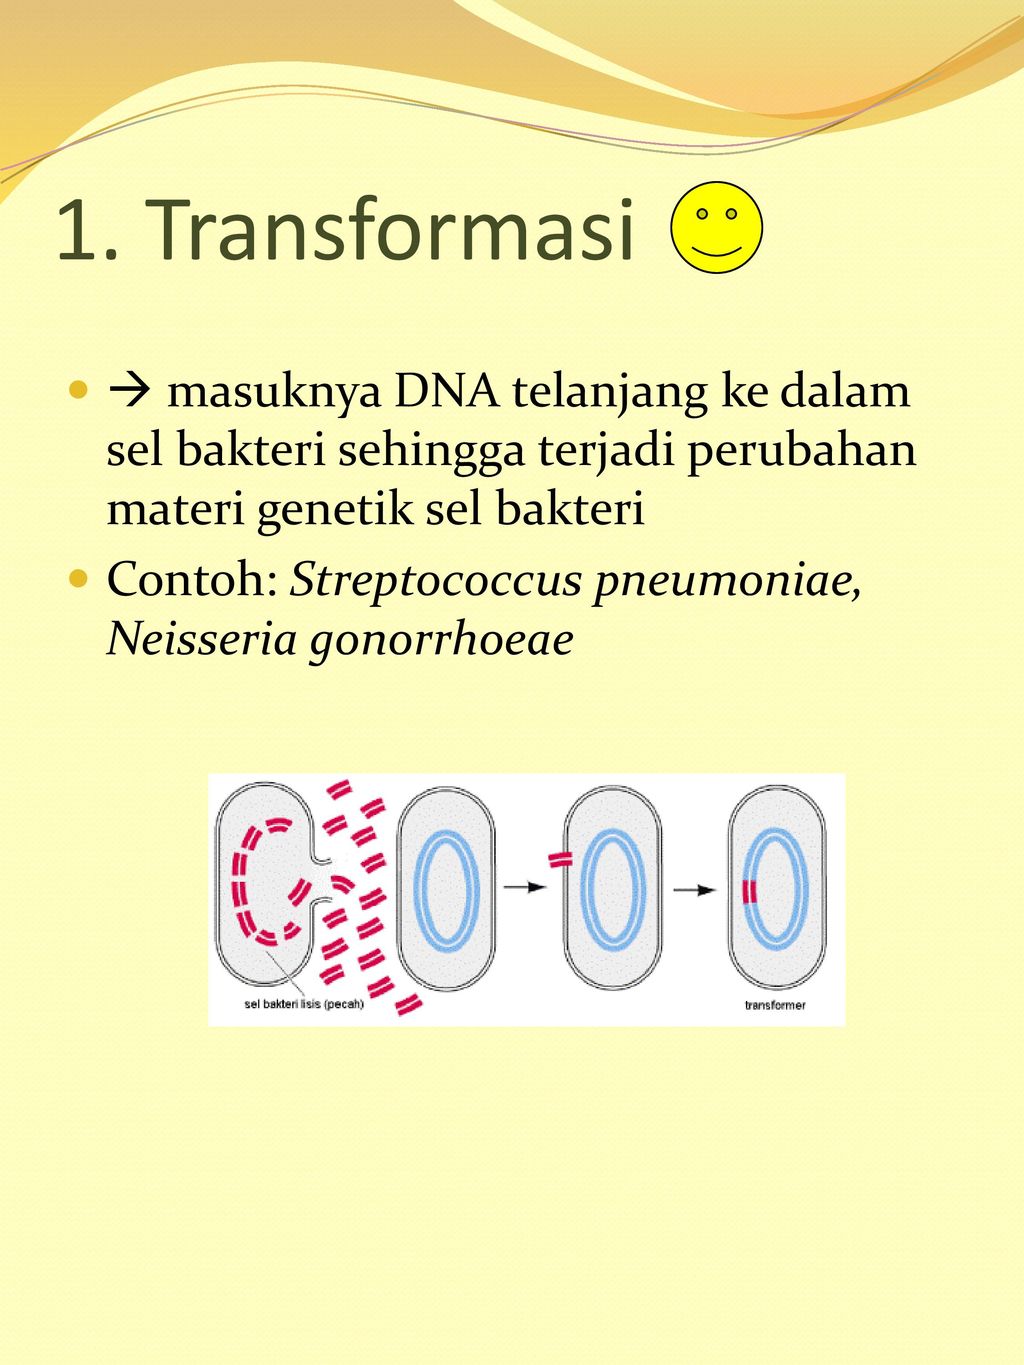 1. Transformasi  masuknya DNA telanjang ke dalam sel bakteri sehingga terjadi perubahan materi genetik sel bakteri.